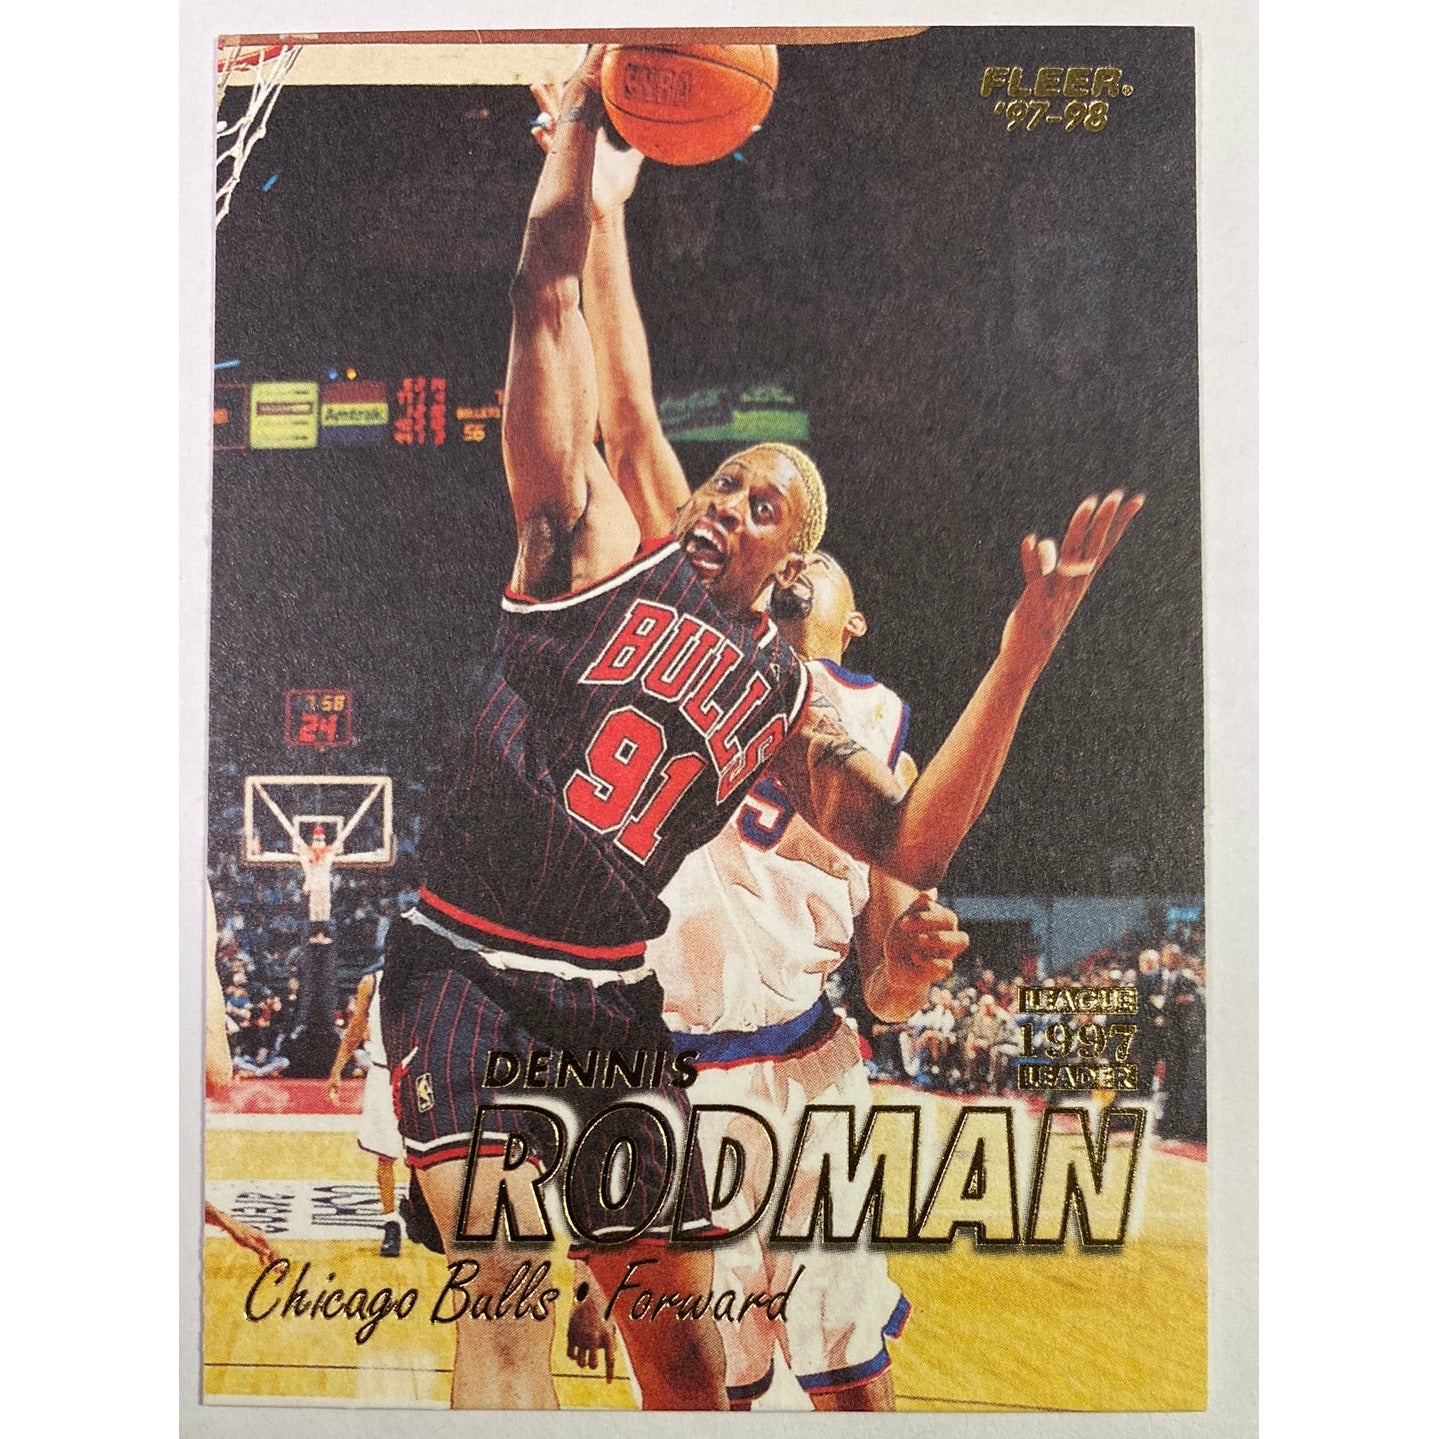  1997-98 Fleer Denis Rodman  Local Legends Cards & Collectibles